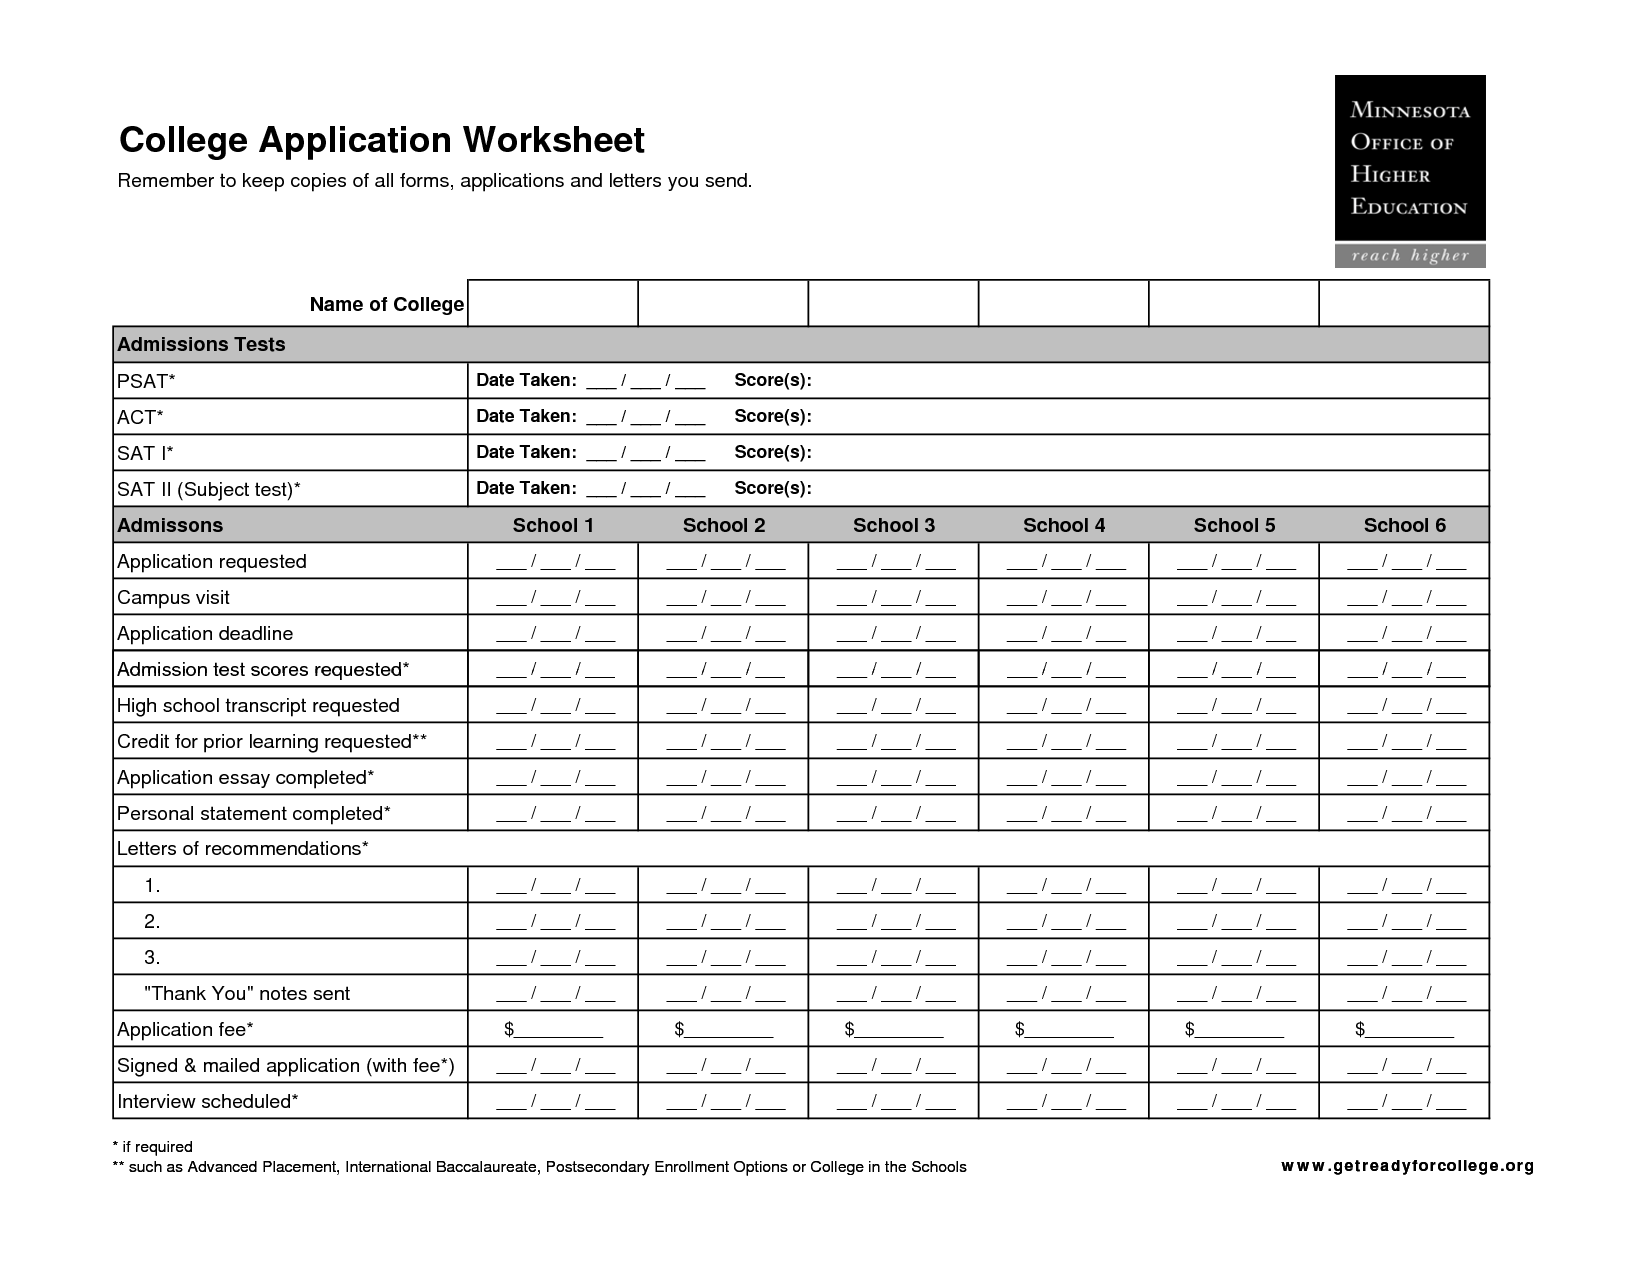 College Application Worksheet Image